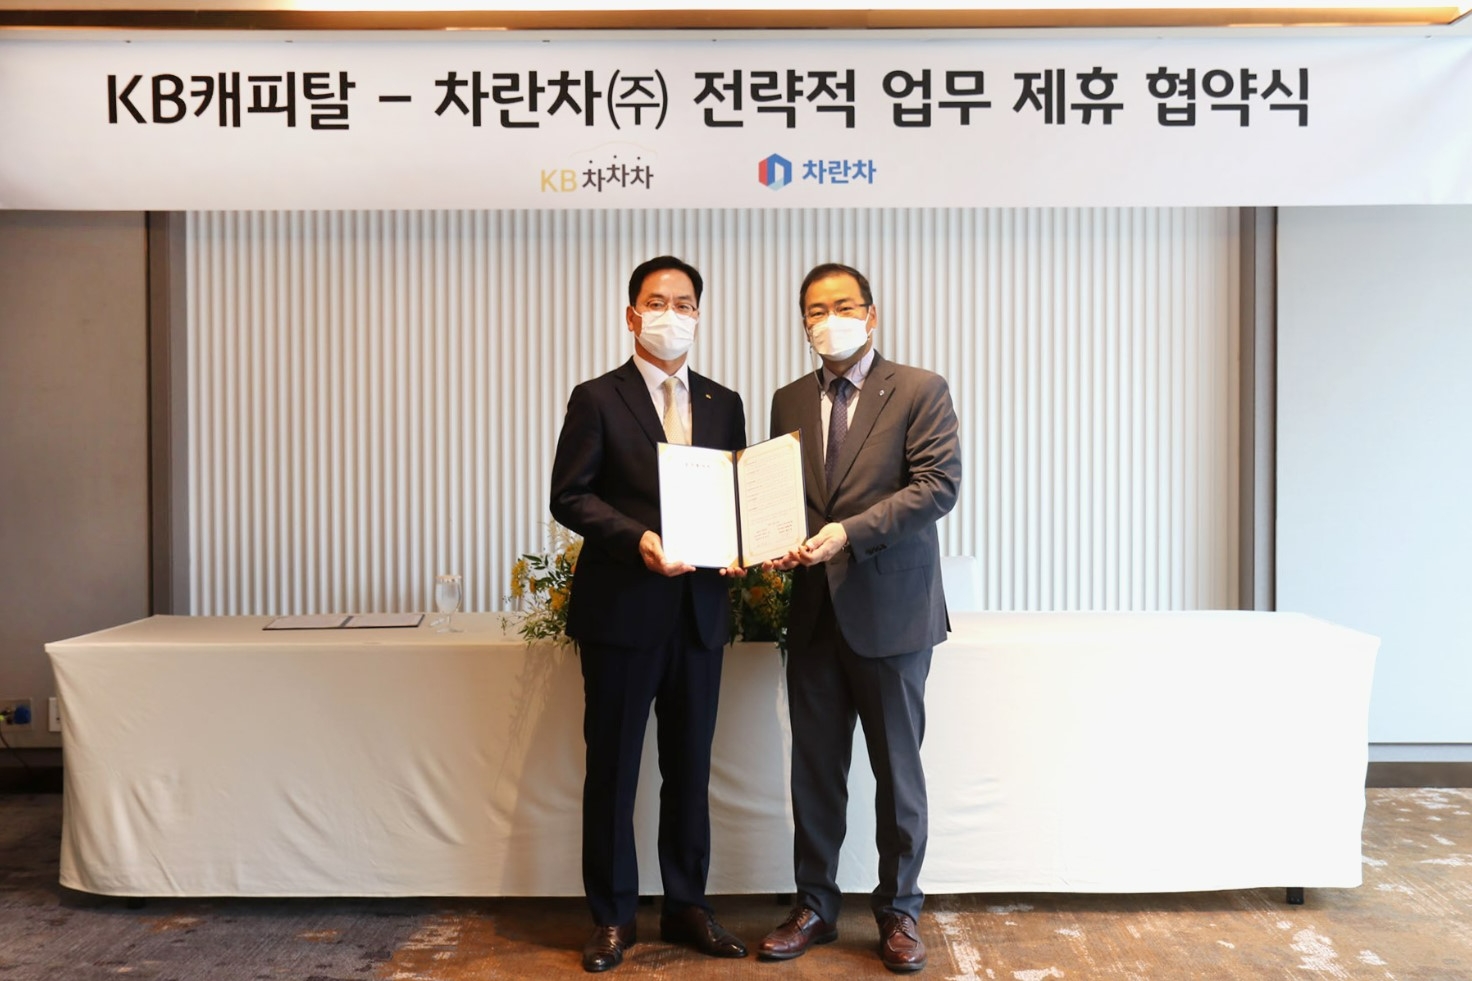 황수남 KB캐피탈 대표이사(왼쪽)와 박창우 차란차㈜ 대표(오른쪽)가 지난 10일 전략적 업무 제휴 협약을 체결했다. /사진제공=KB캐피탈